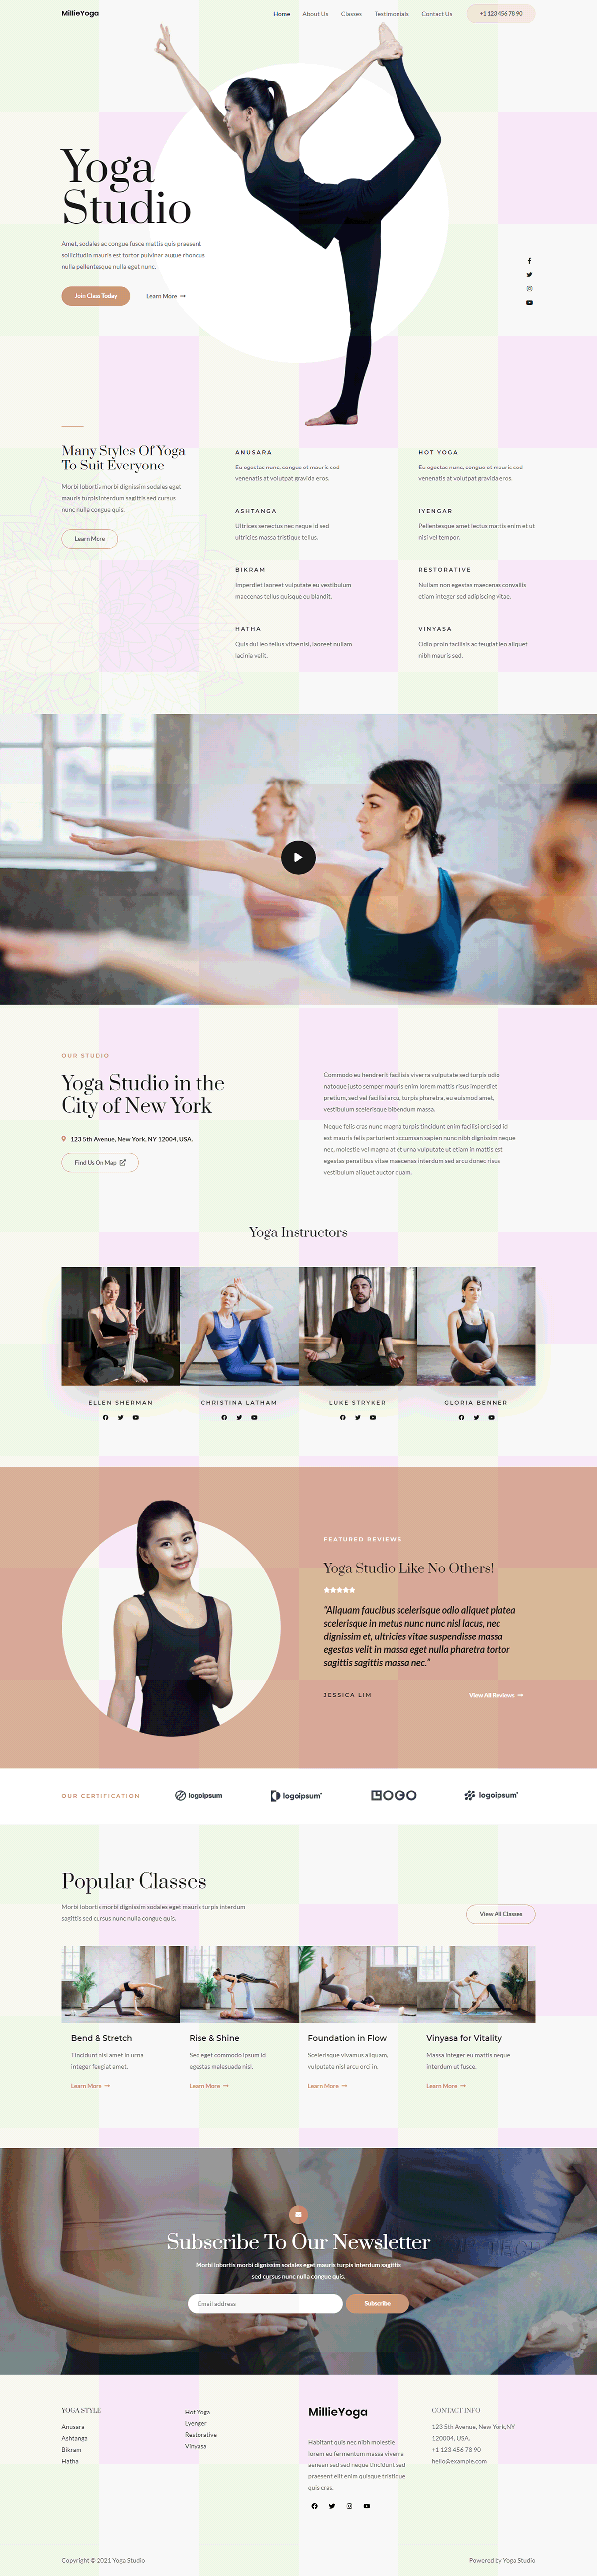 Yoga Studio landing page website design in WordPress